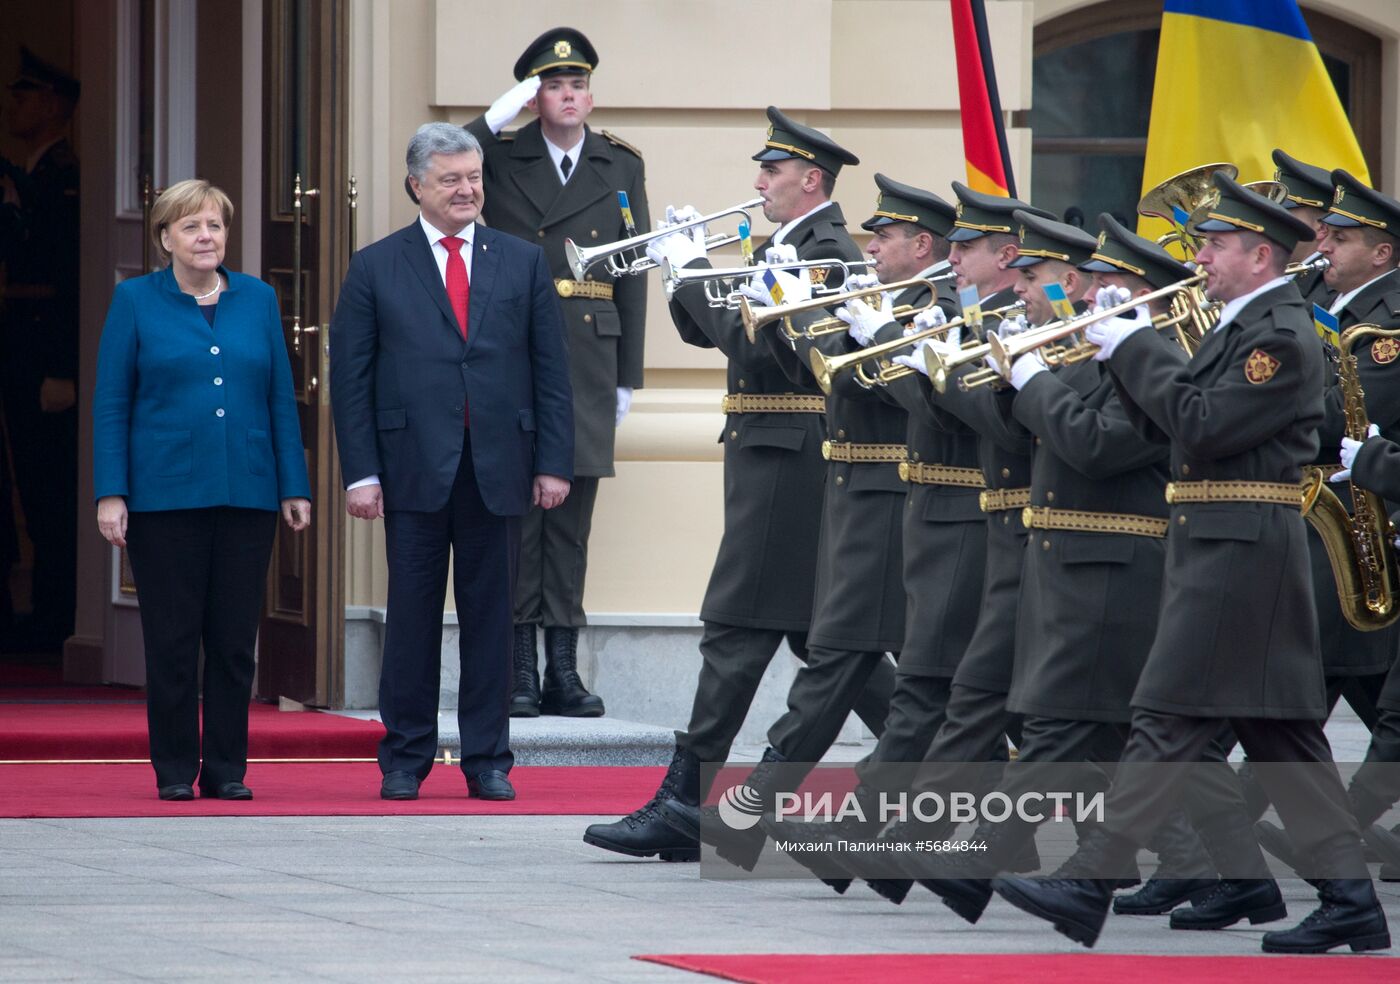 Встреча президента Украины П. Порошенко и канцлера Германии А. Меркель в Киеве